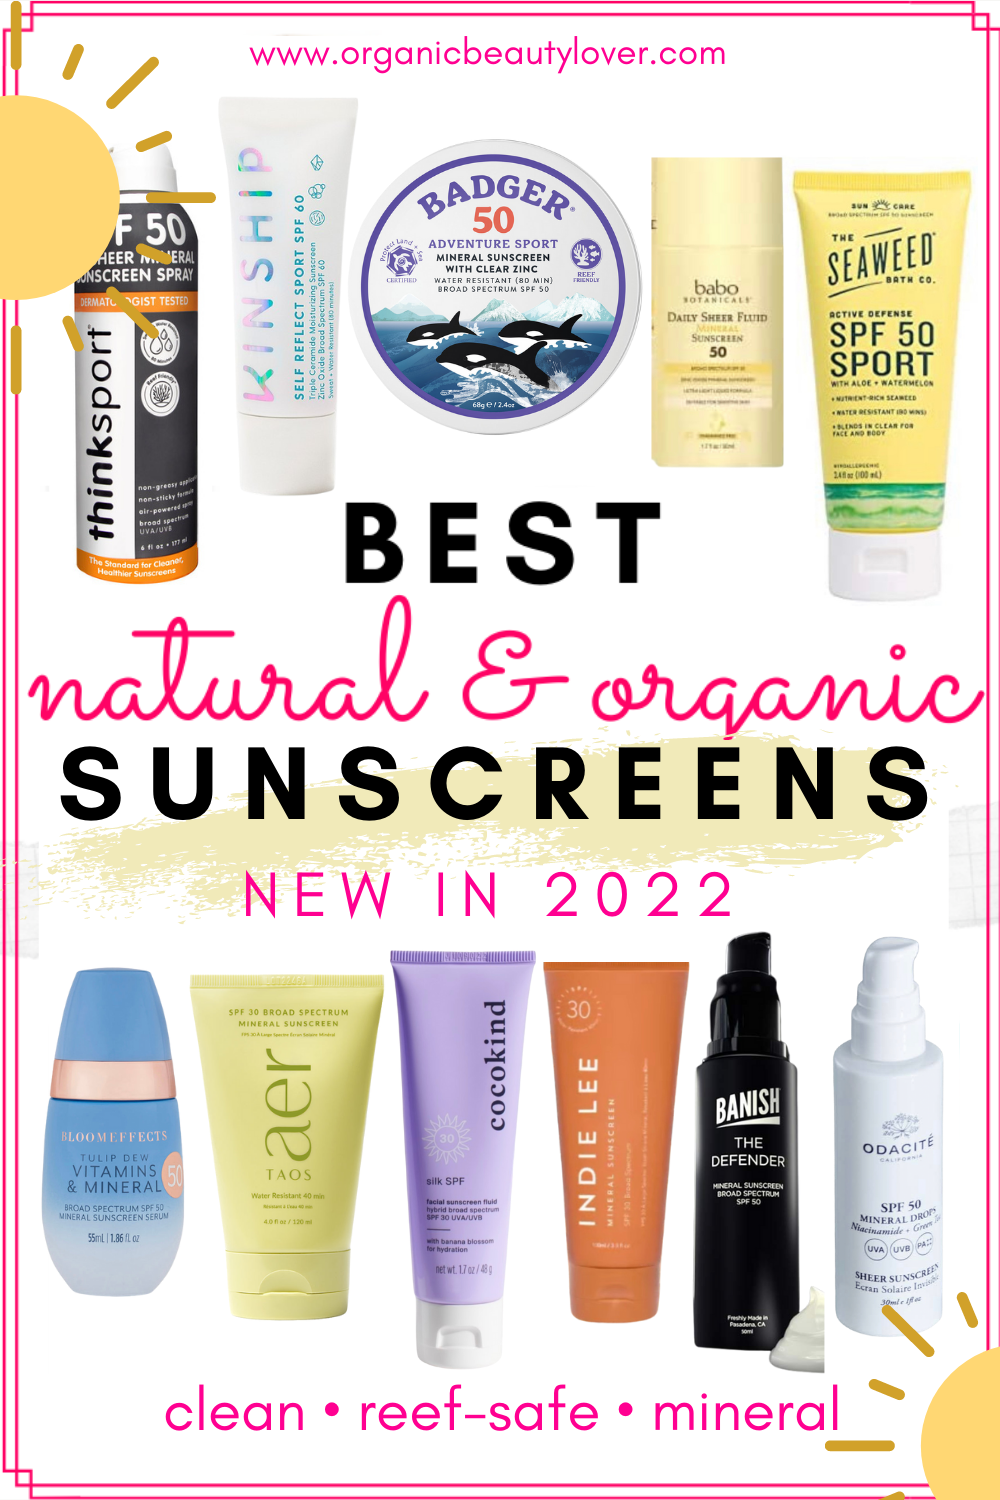 Best natural sunscreens 2022